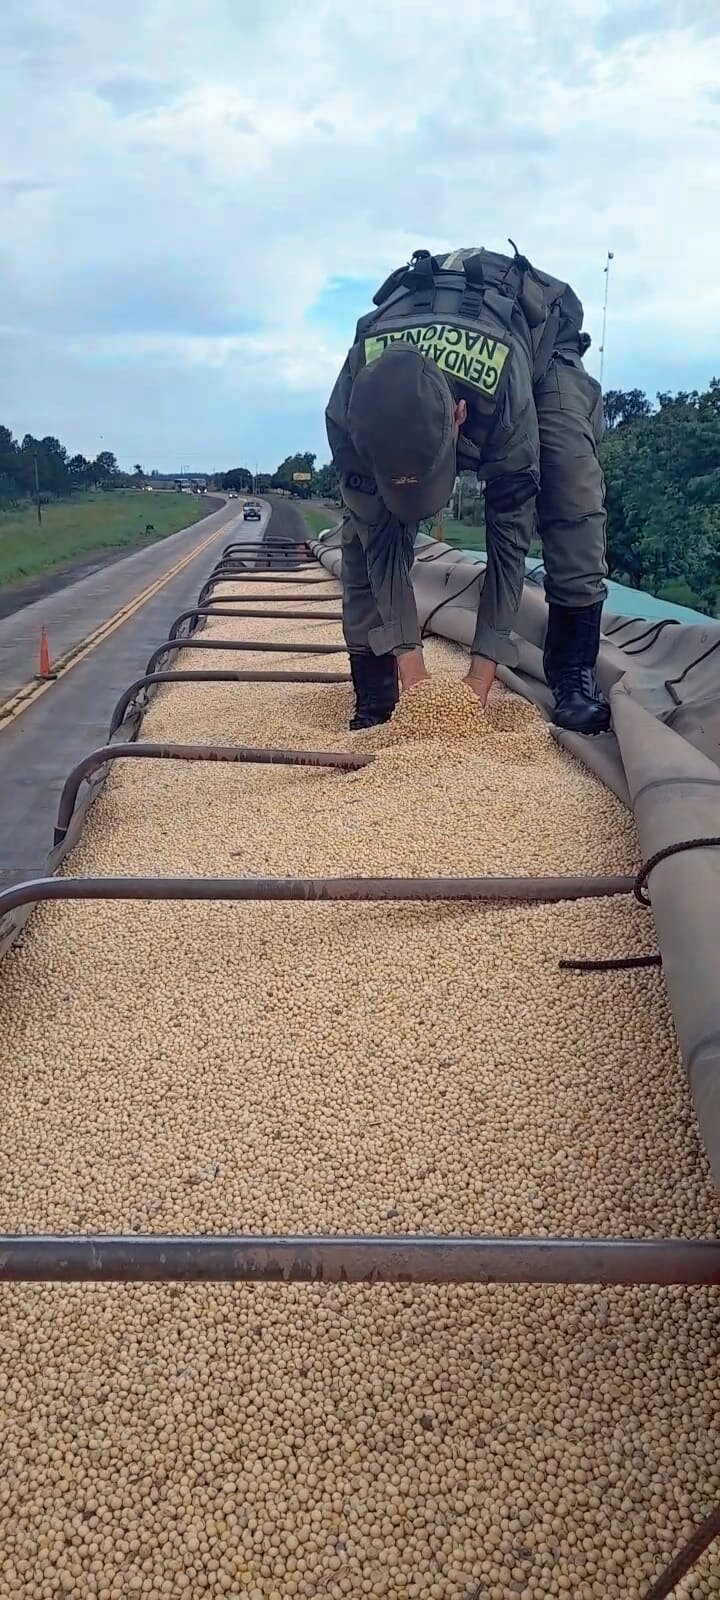 Secuestran 507 toneladas de soja a granel en distintos procedimientos imagen-4